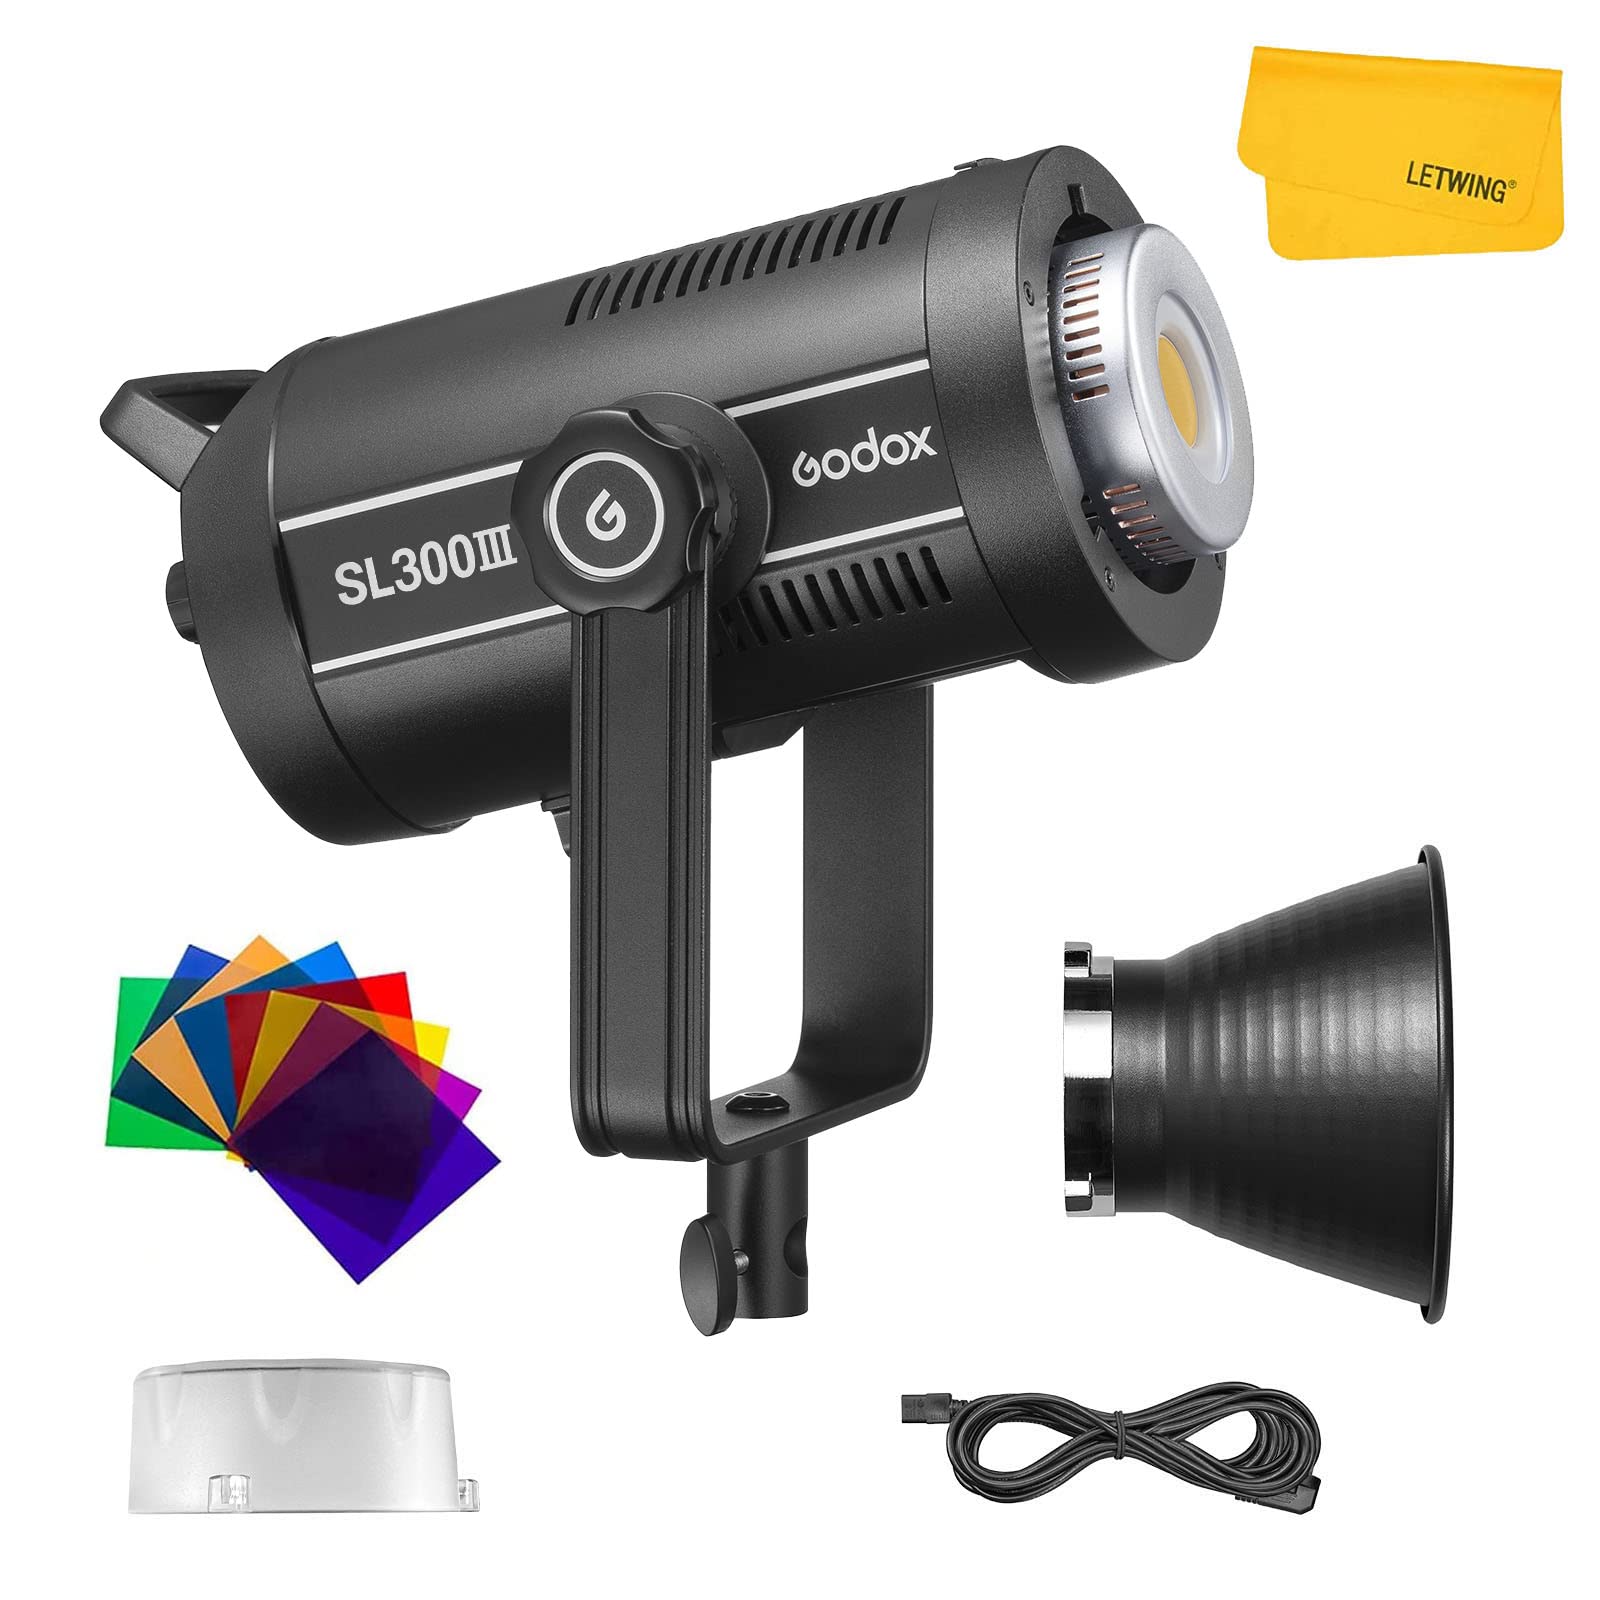 Godox SL300III SL-300 III SL300W III LED ビデオライト 定常光ライト ボーエンズマウント Bowens CRI 96 / TLCI 97 ビデオ オンライン